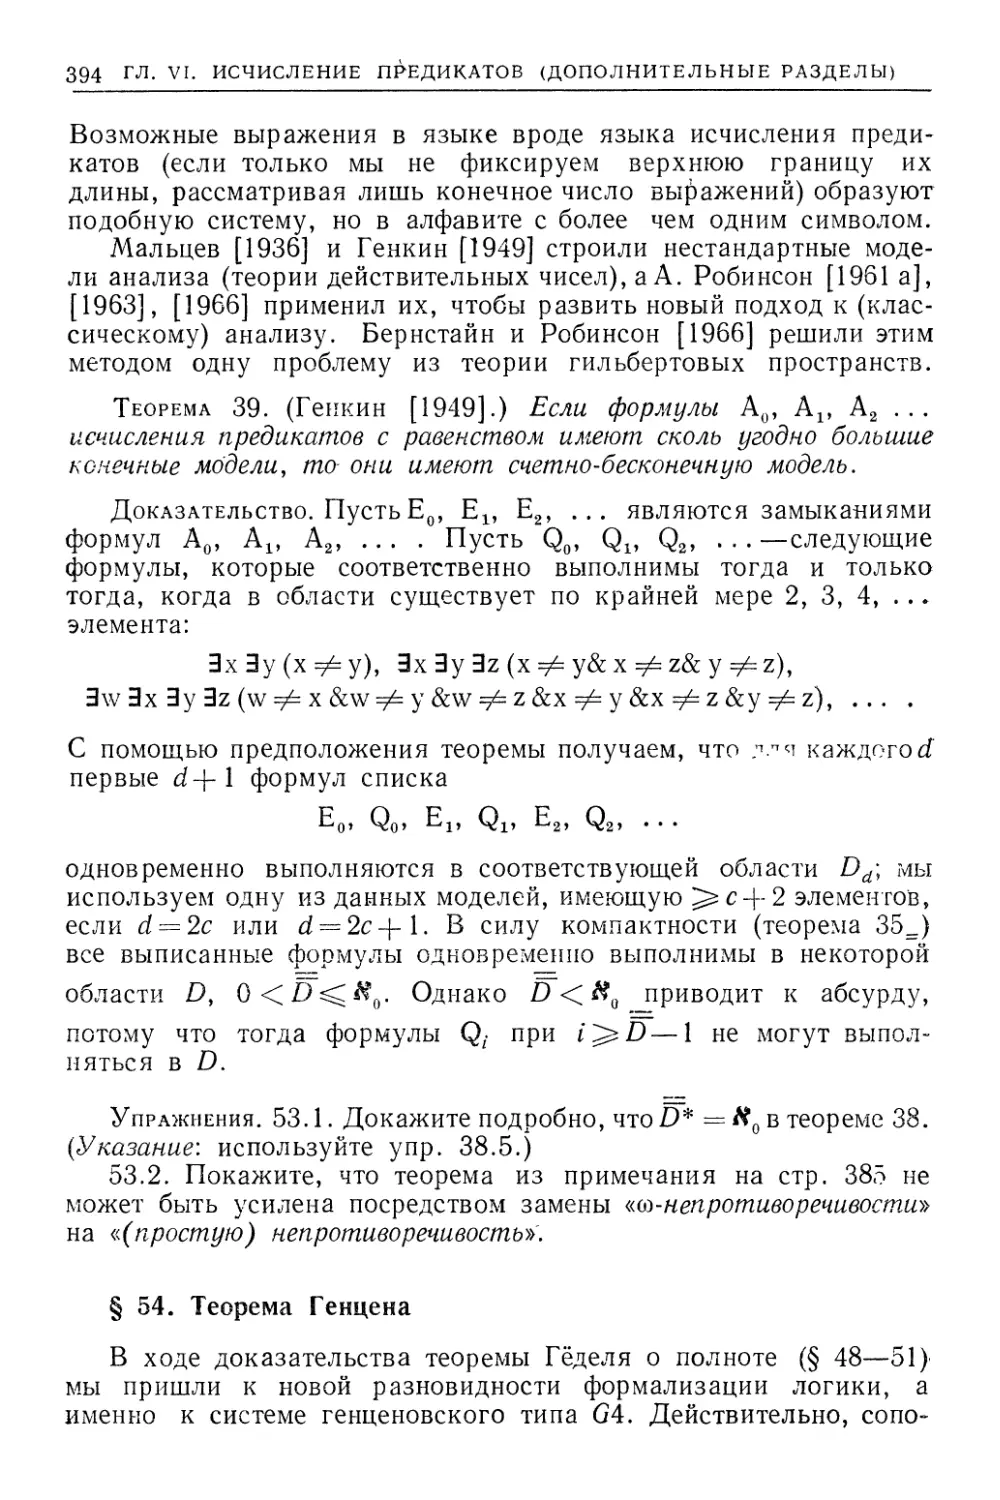 §54. Теорема Генцена